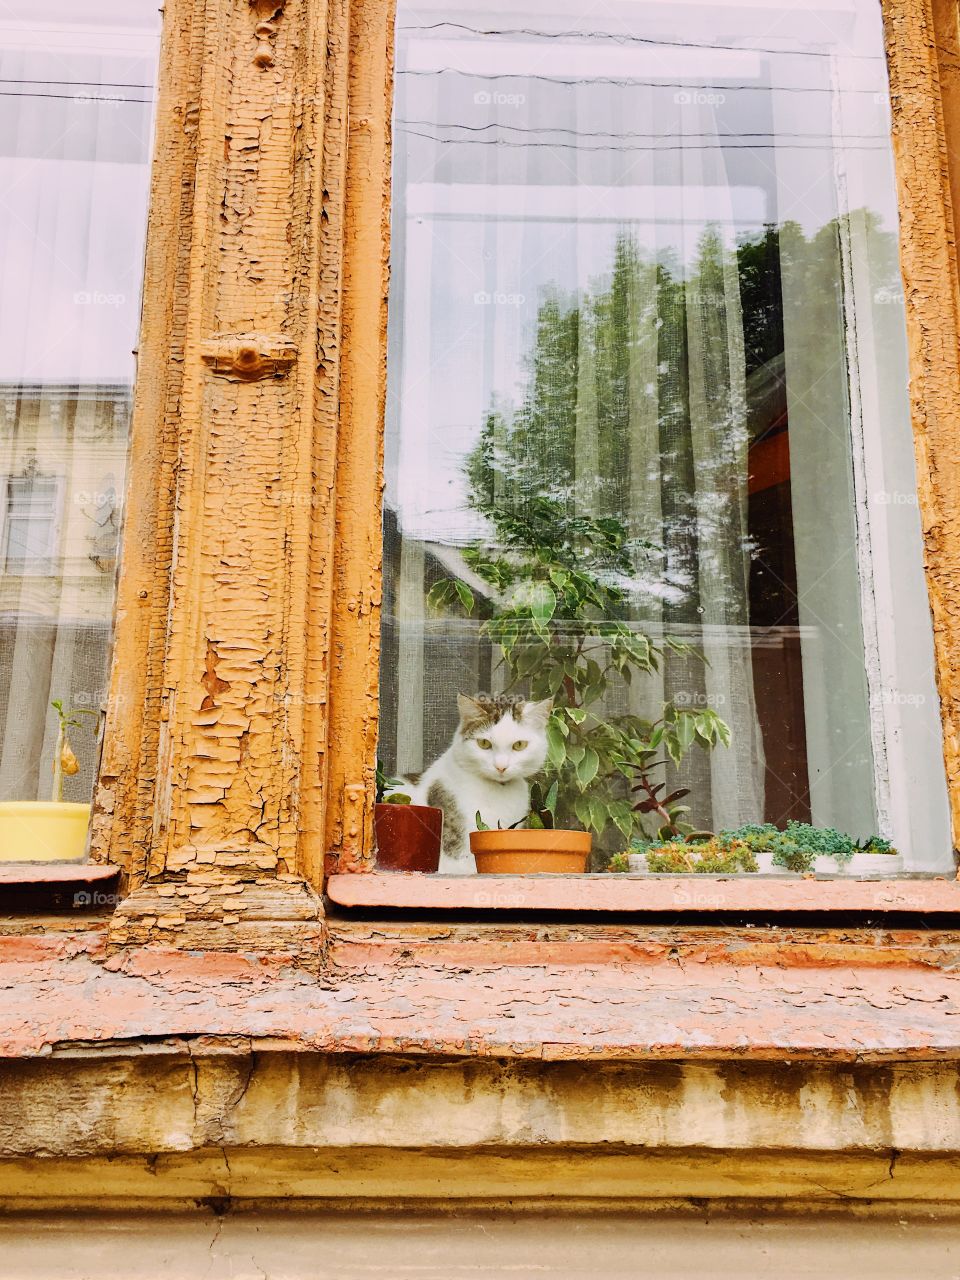 Cat at the orange window 